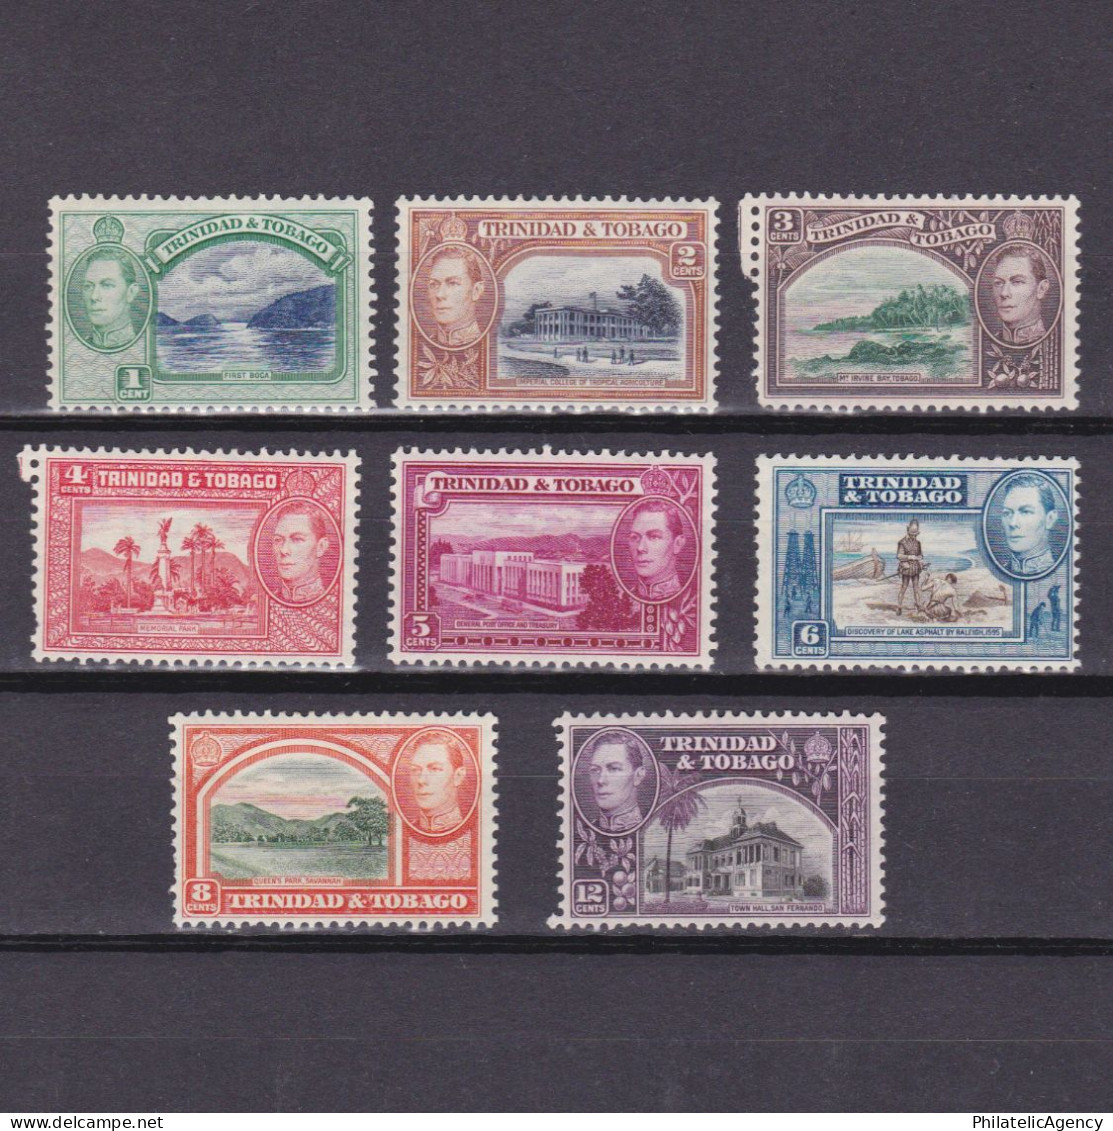 TRINIDAD & TOBAGO 1938, SG #246-252, CV £15, Part Set, MH - Trindad & Tobago (...-1961)